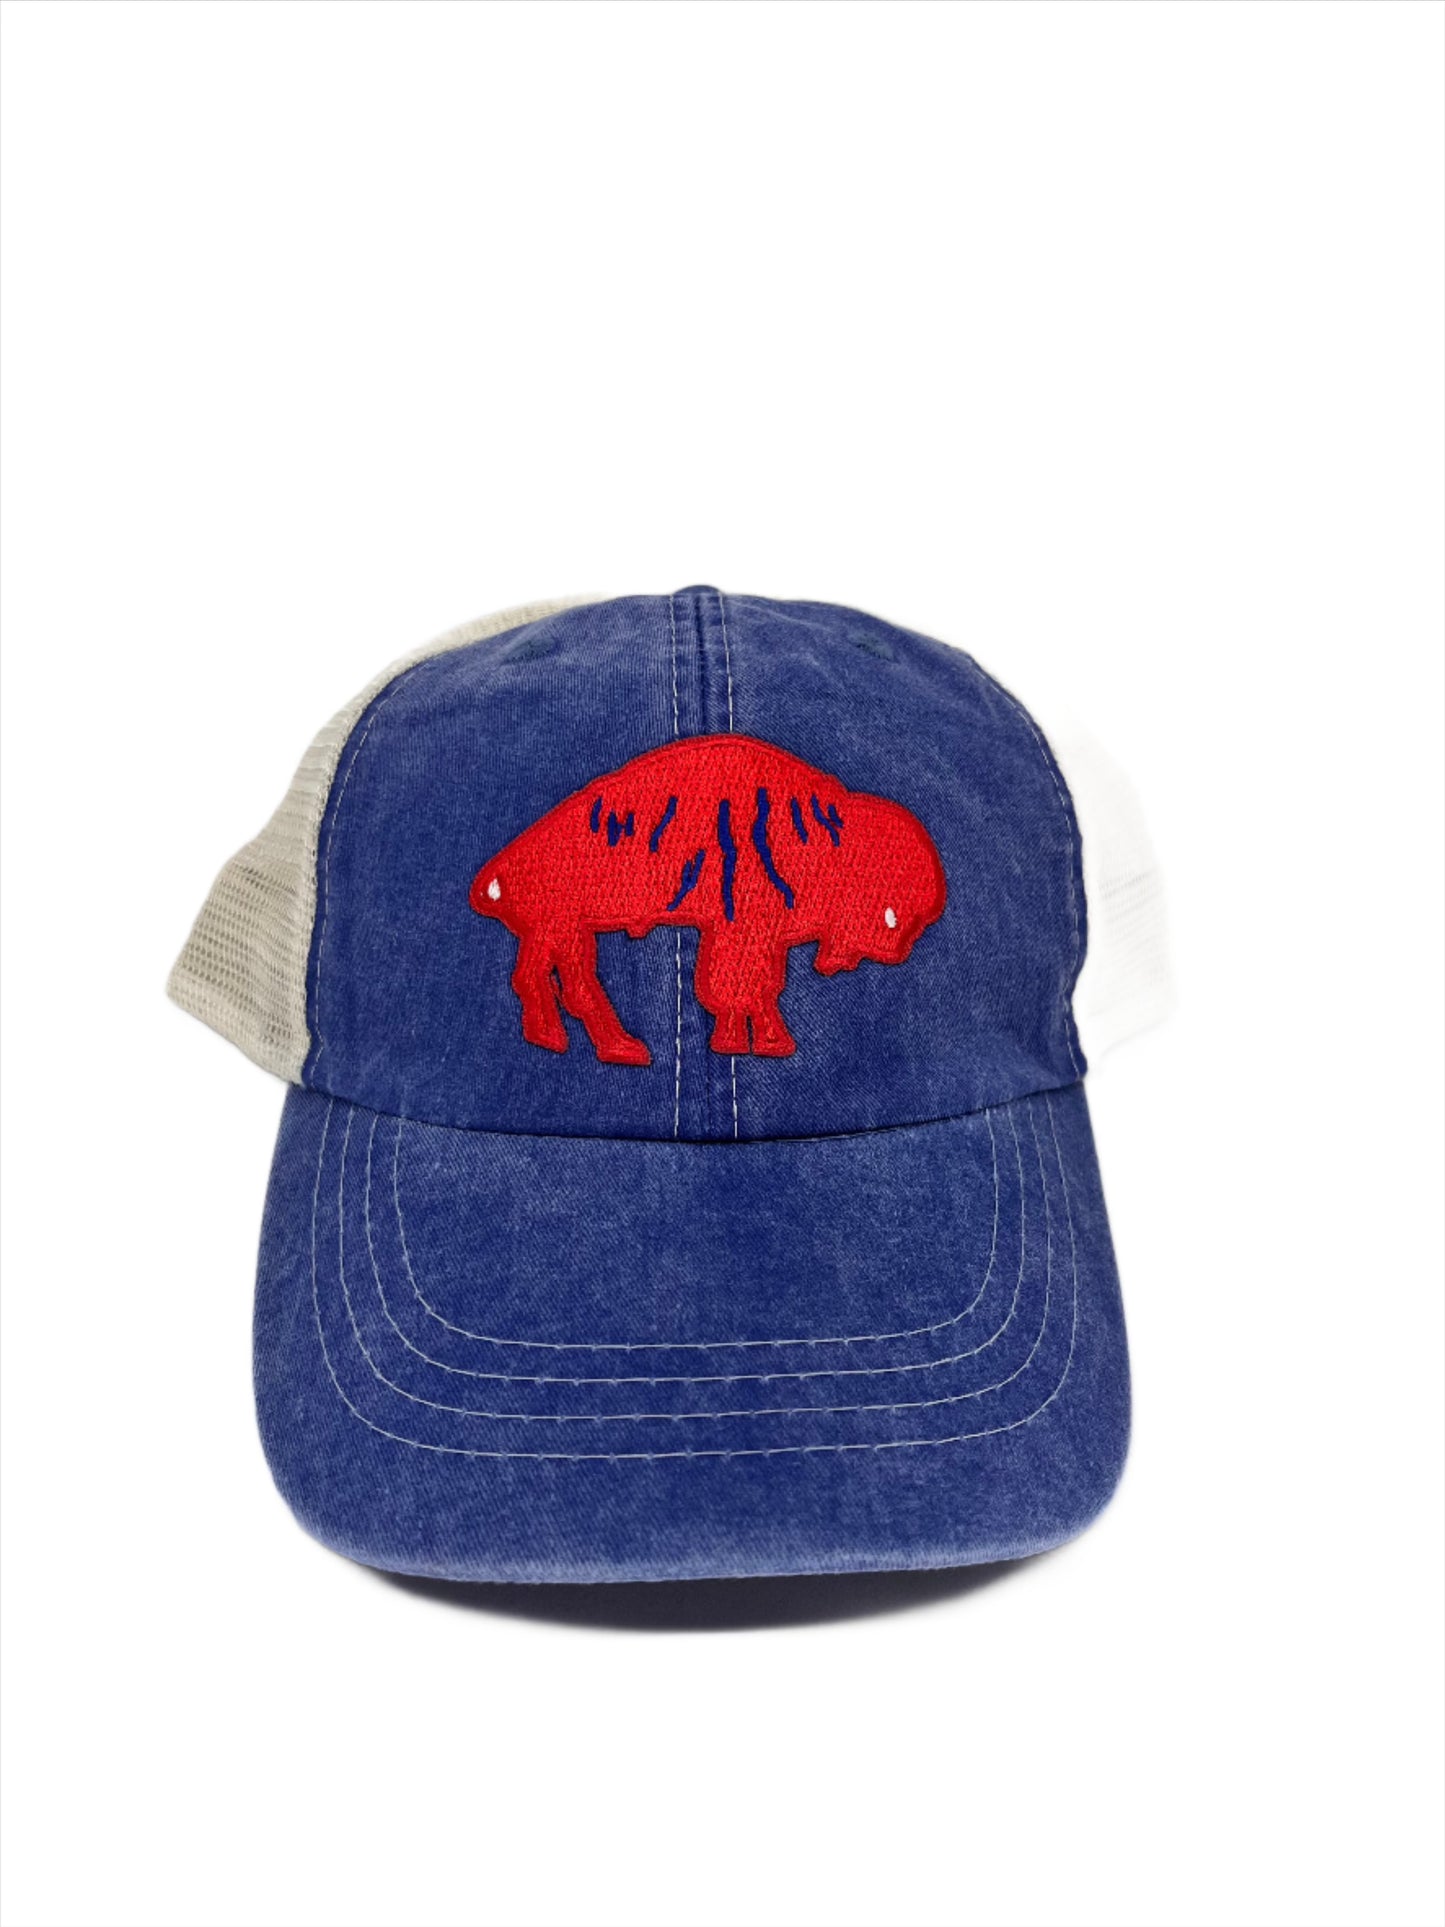 Let's Go Buffalo Trucker Hat w/Patch